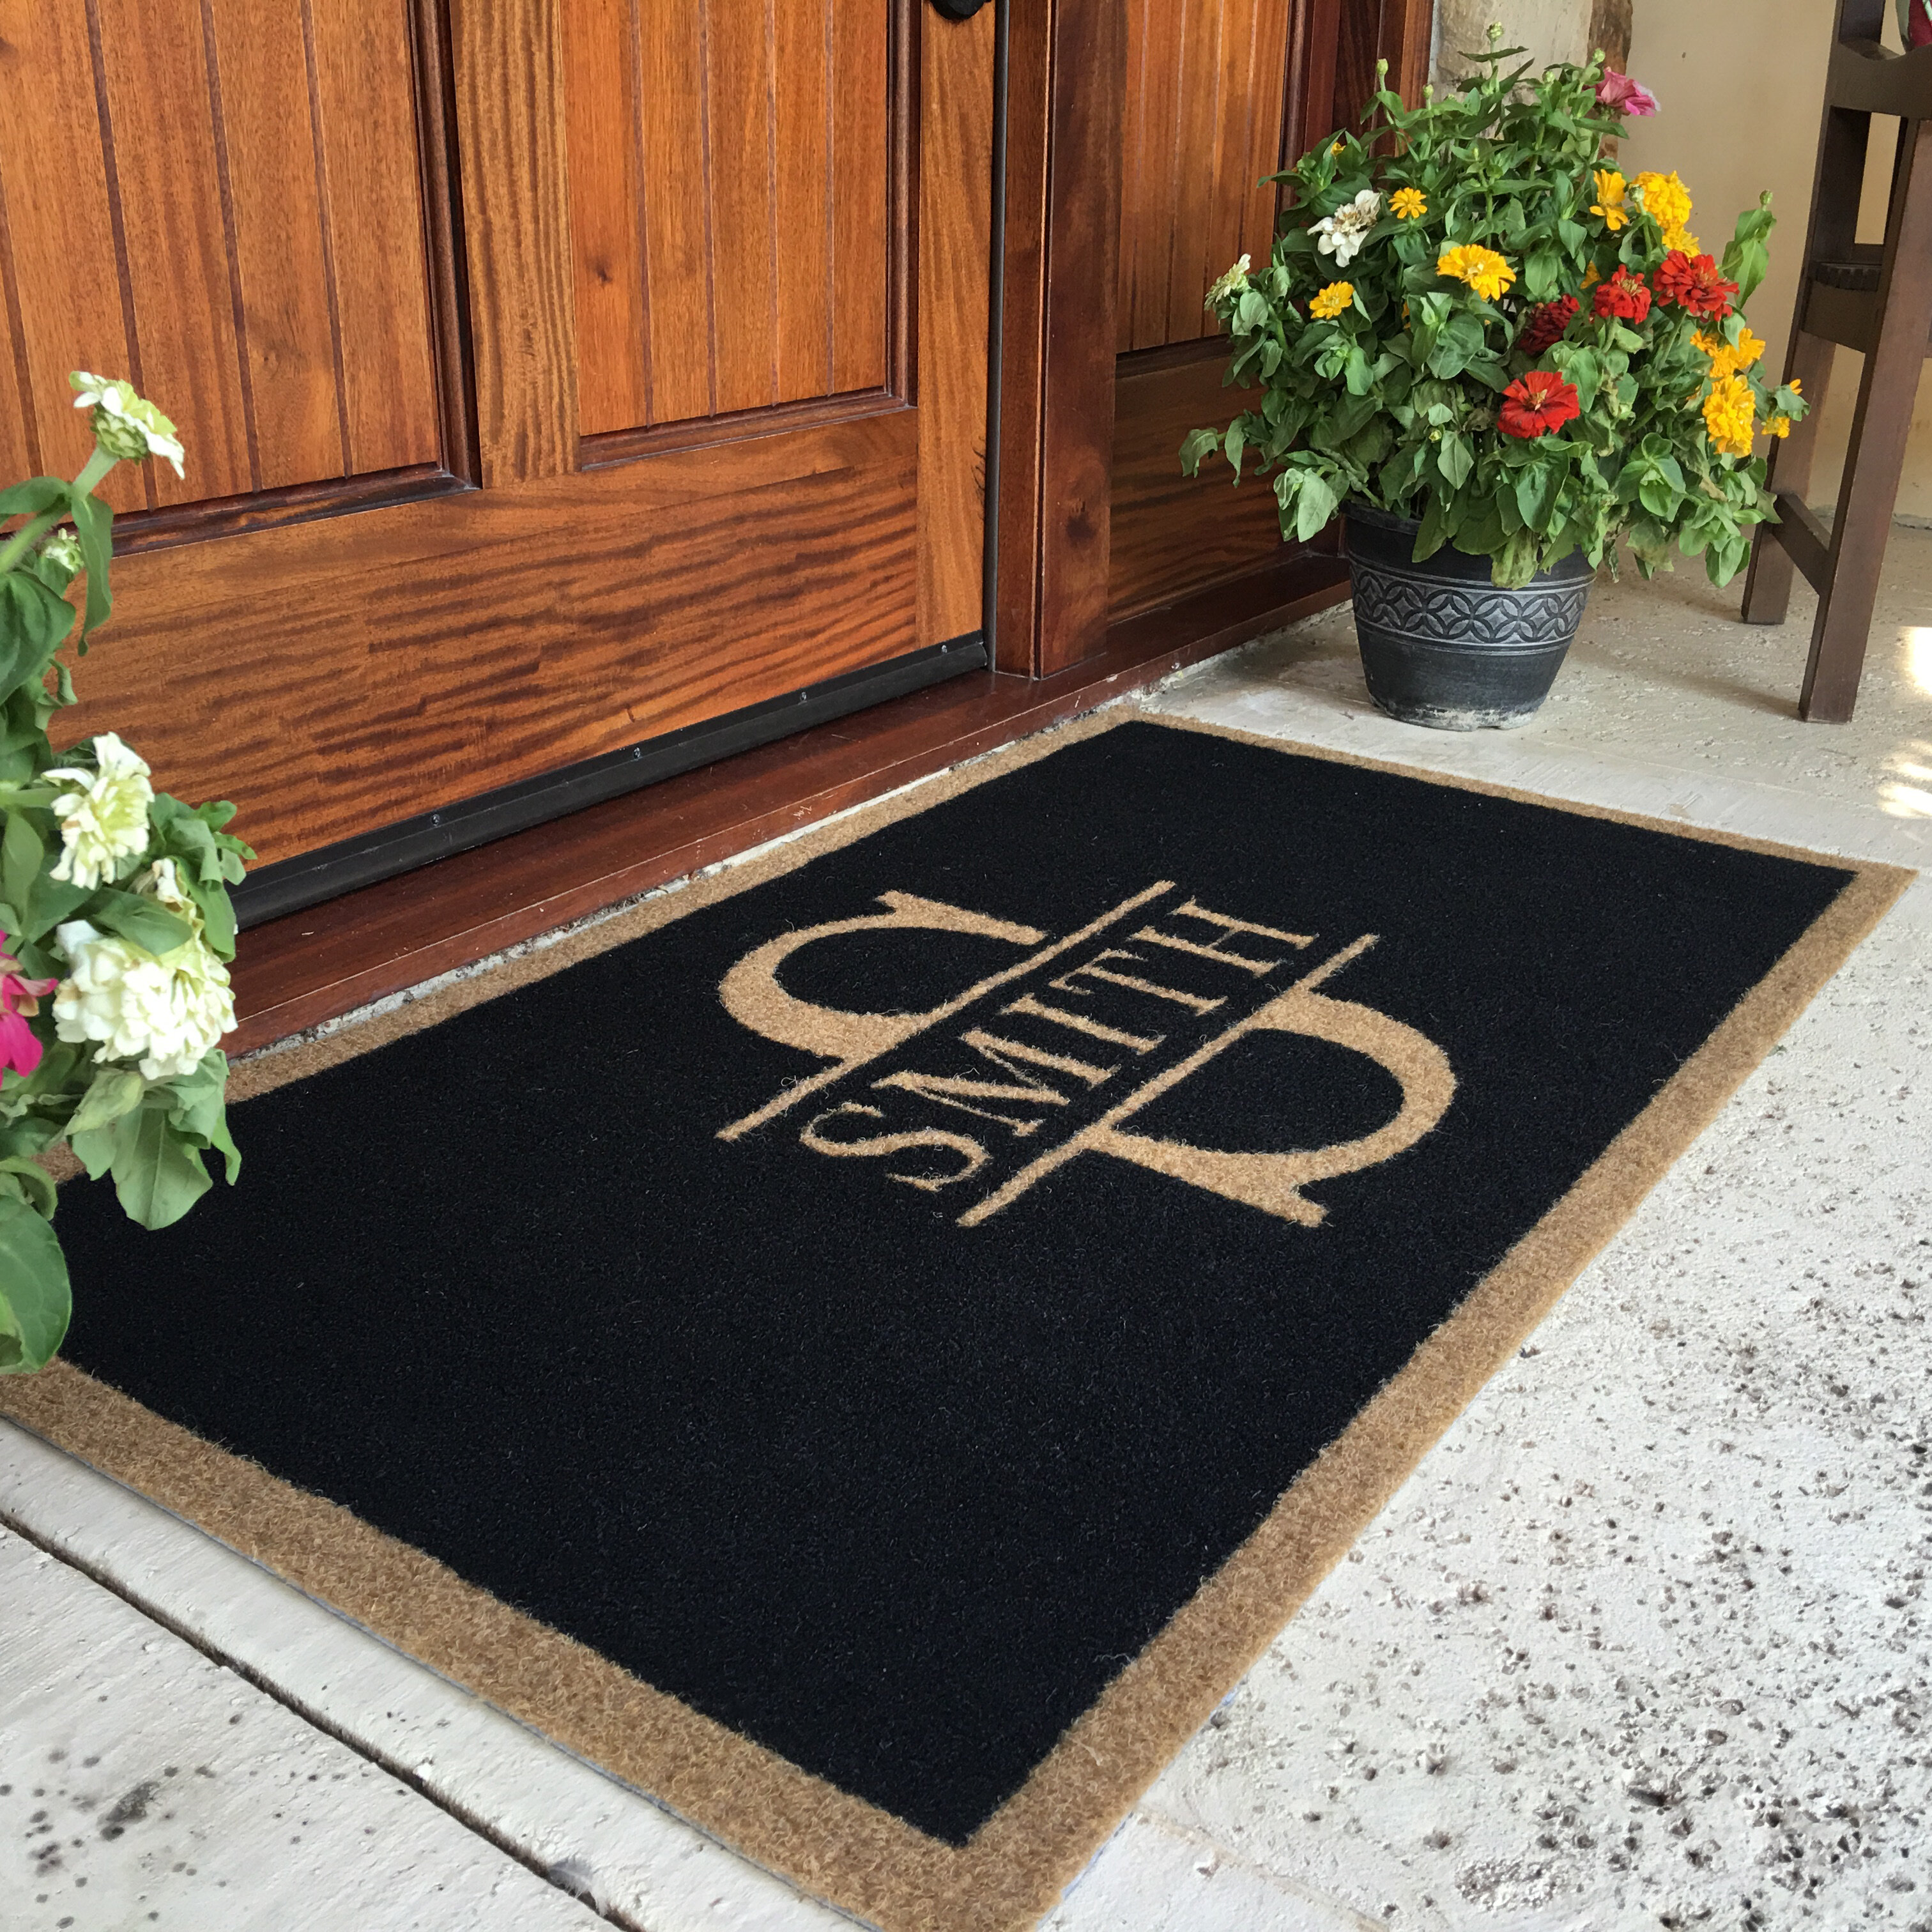 2 X Natural Coir Rubber Non Slip Doormat Floor Entrance Door Mat Indoor Outdoor 